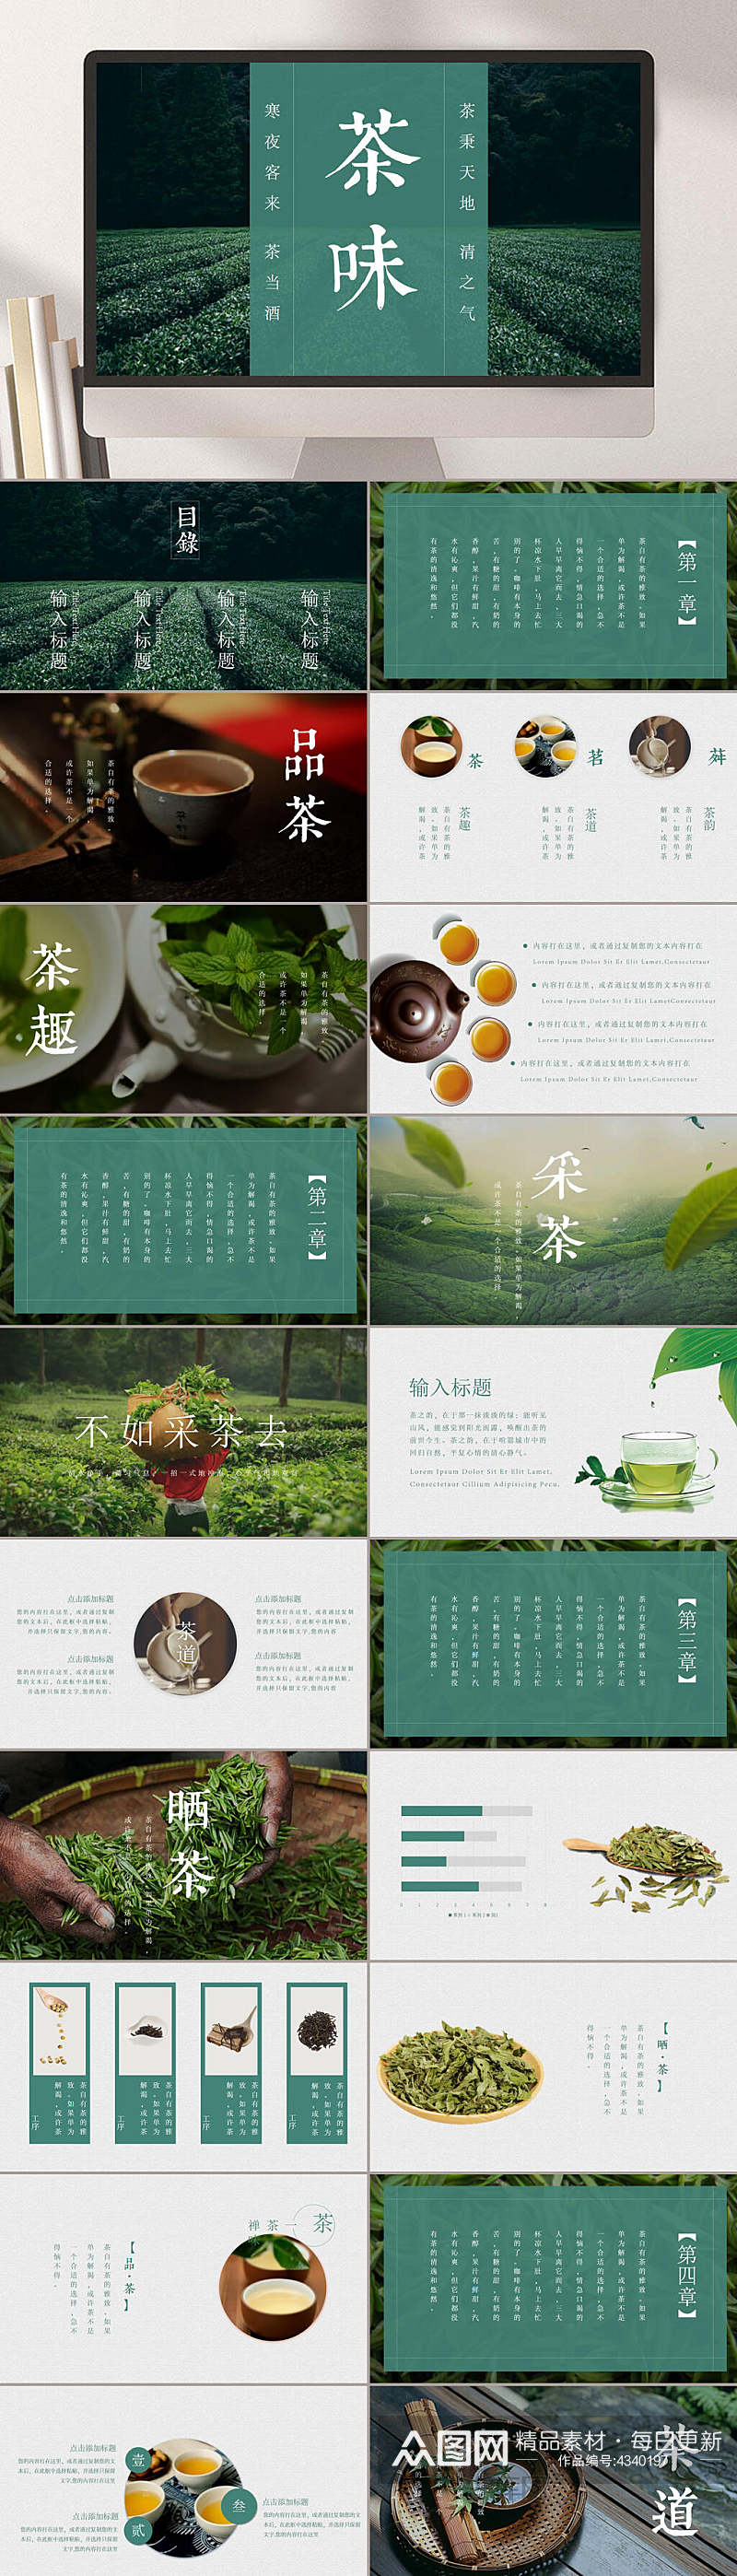 茶味中华文化PPT素材